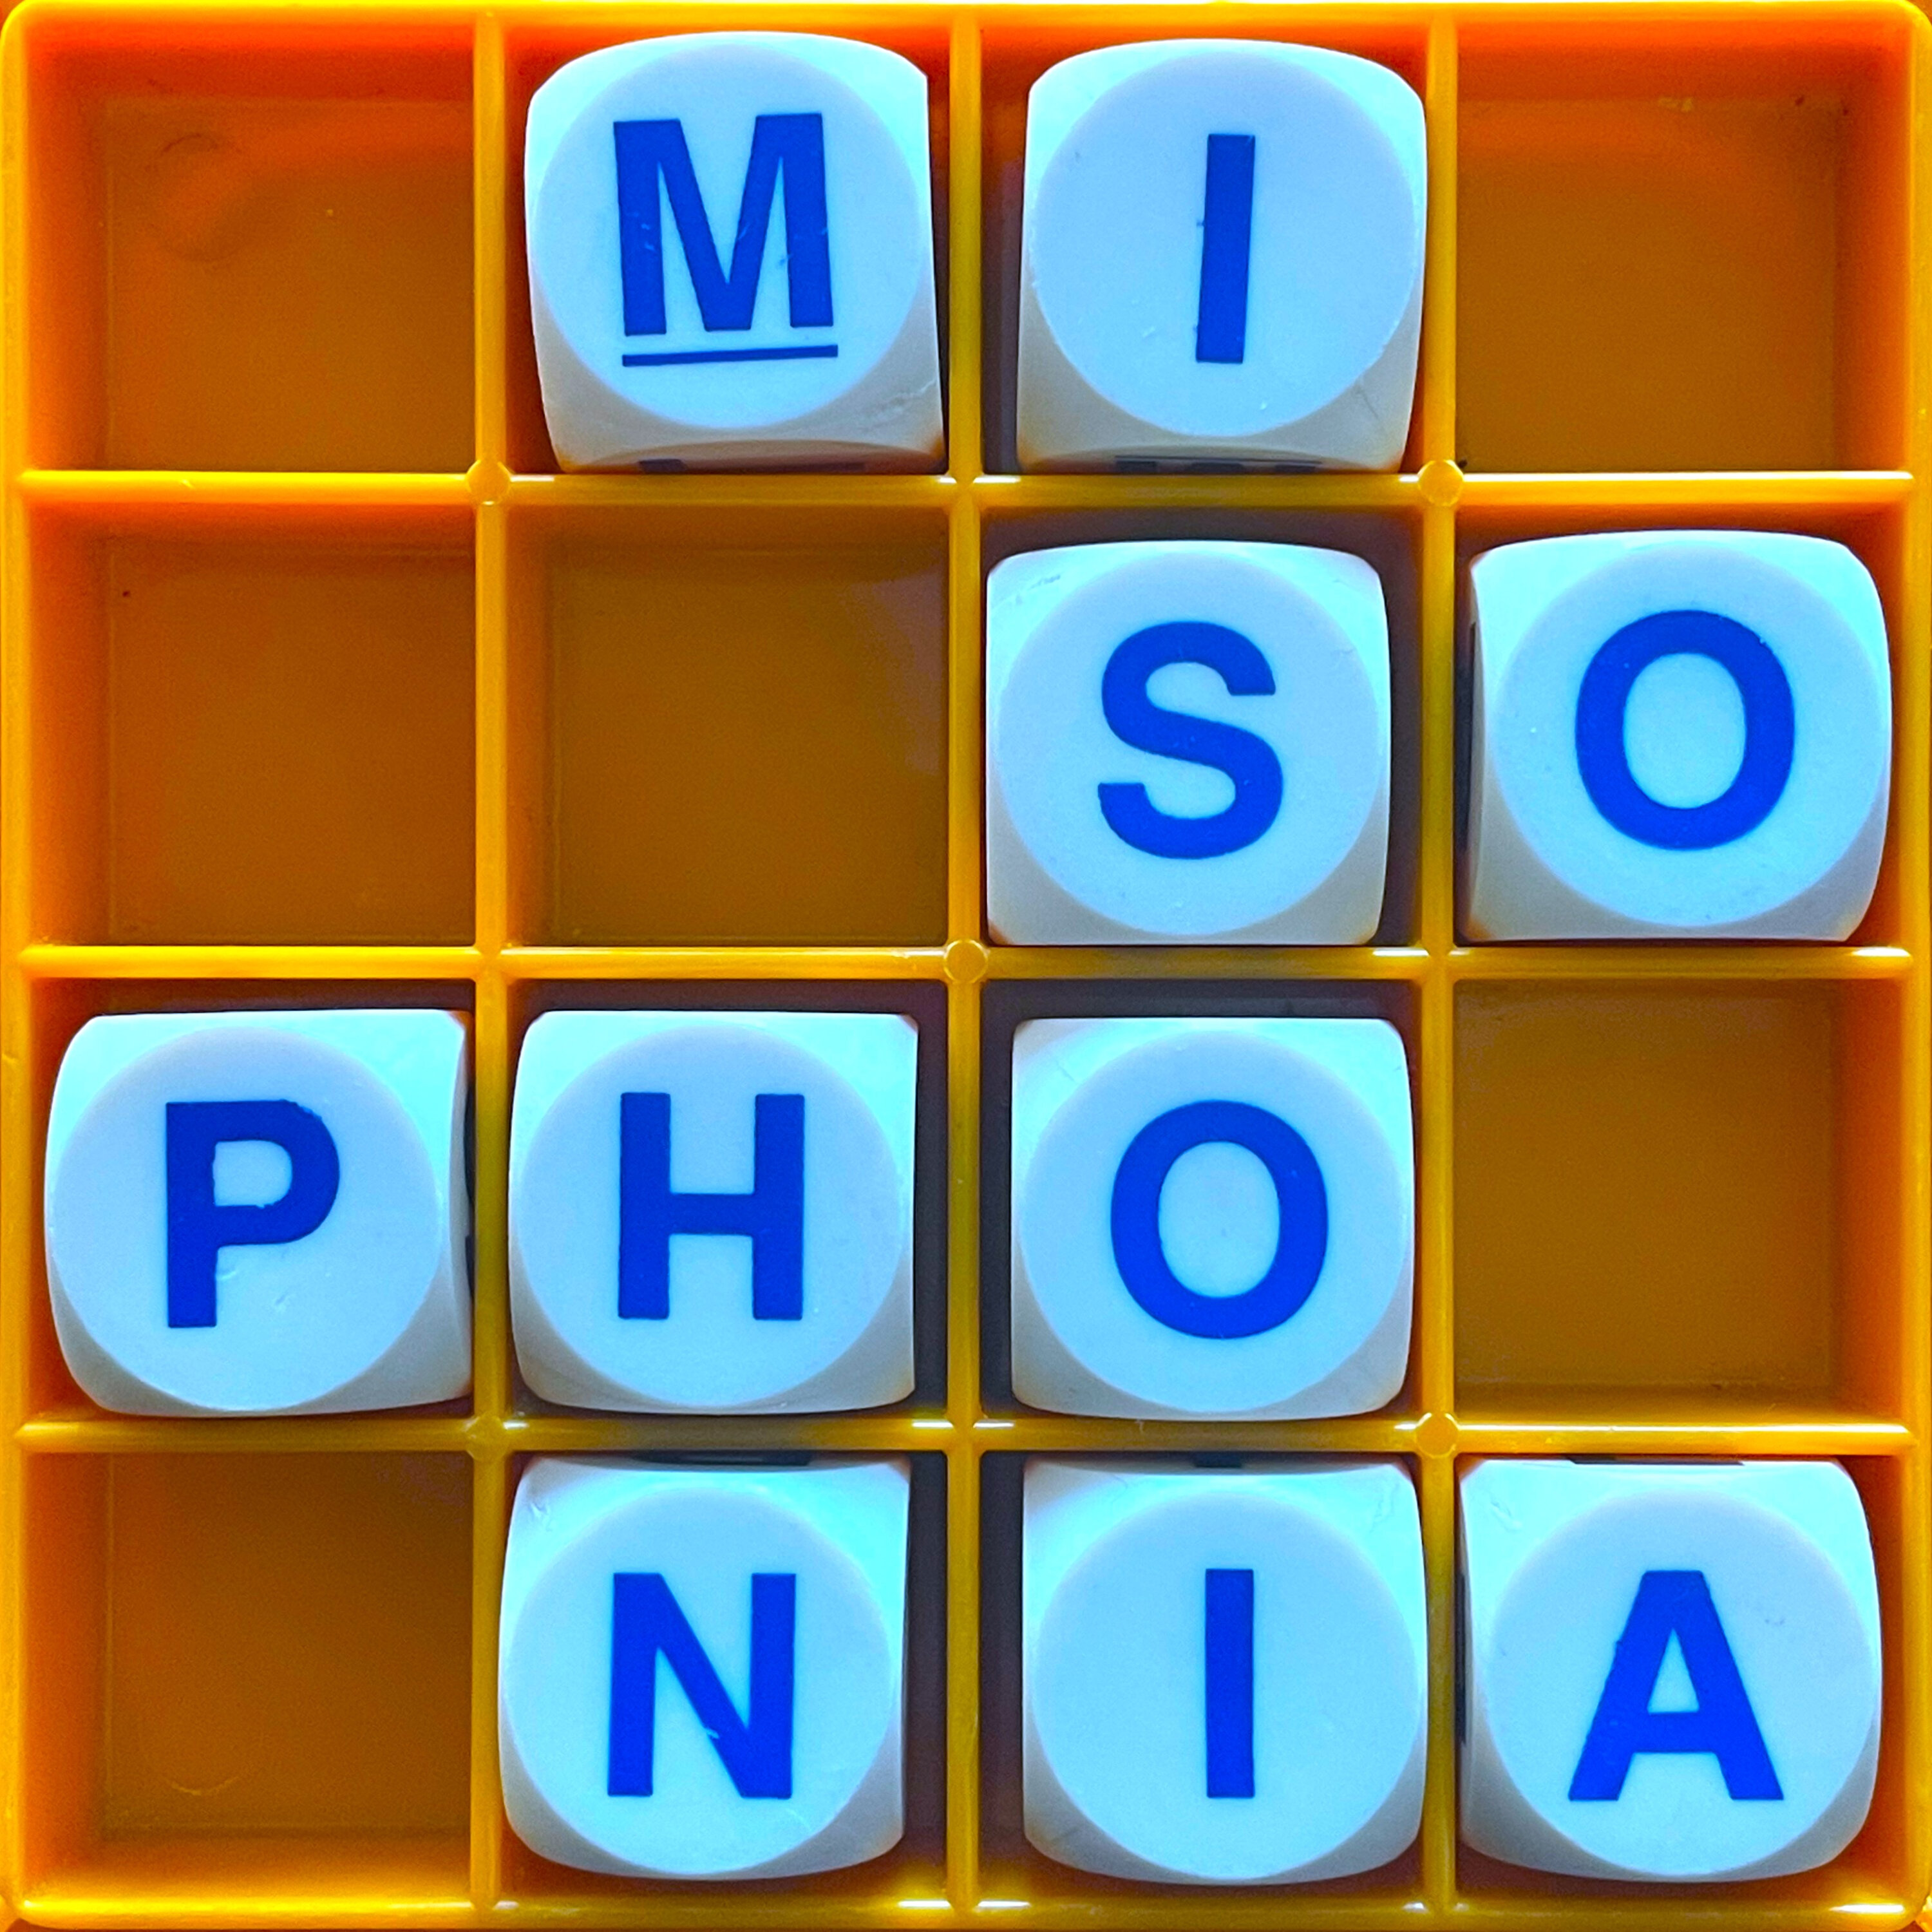 184. Misophonia